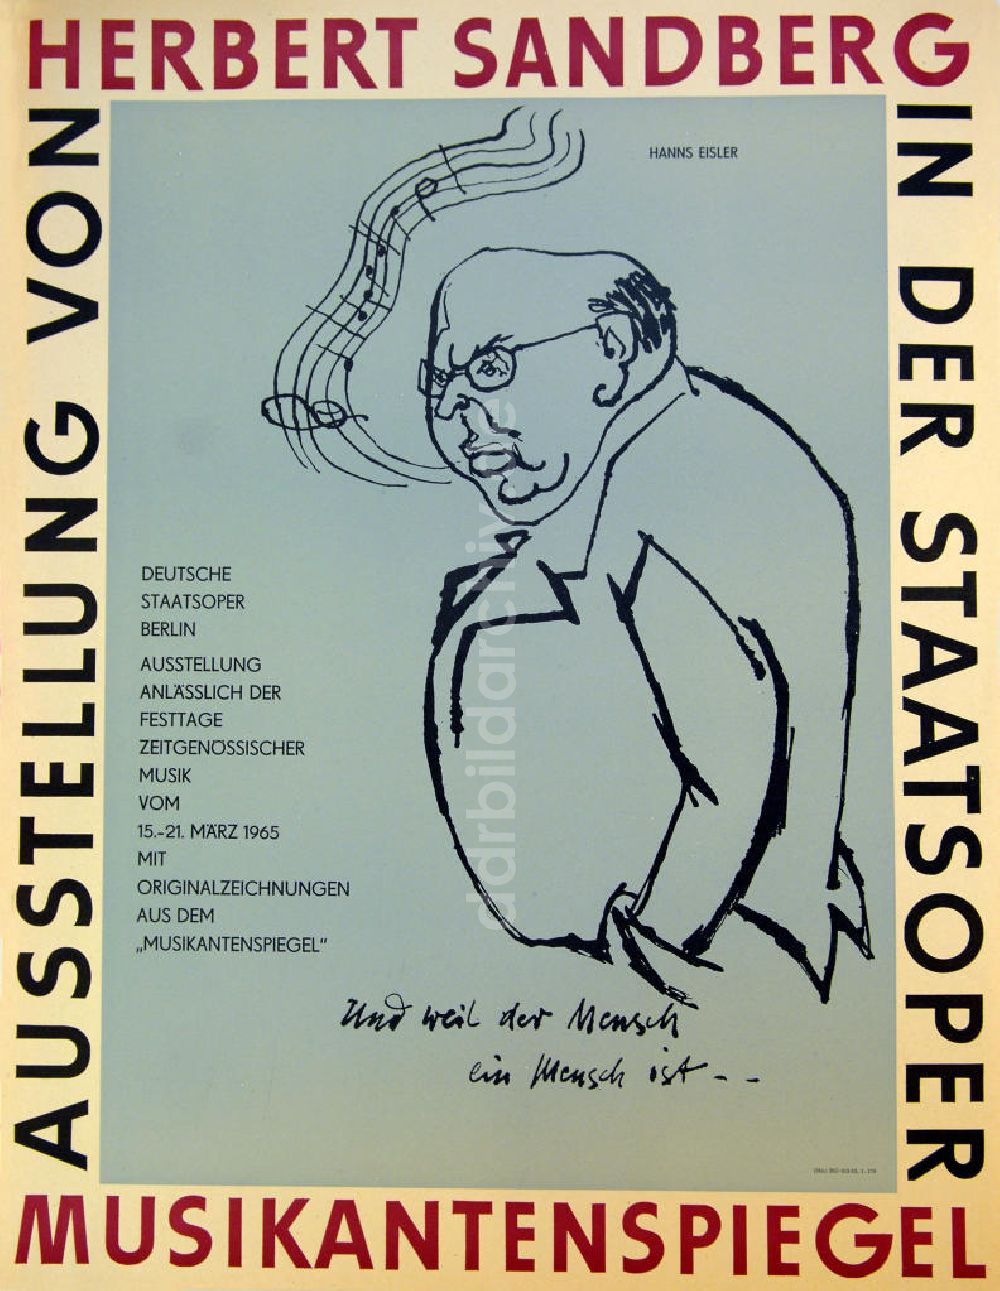 DDR-Fotoarchiv: Berlin - Plakat von der Ausstellung Musikantenspiegel über Herbert Sandberg aus dem Jahr 1965